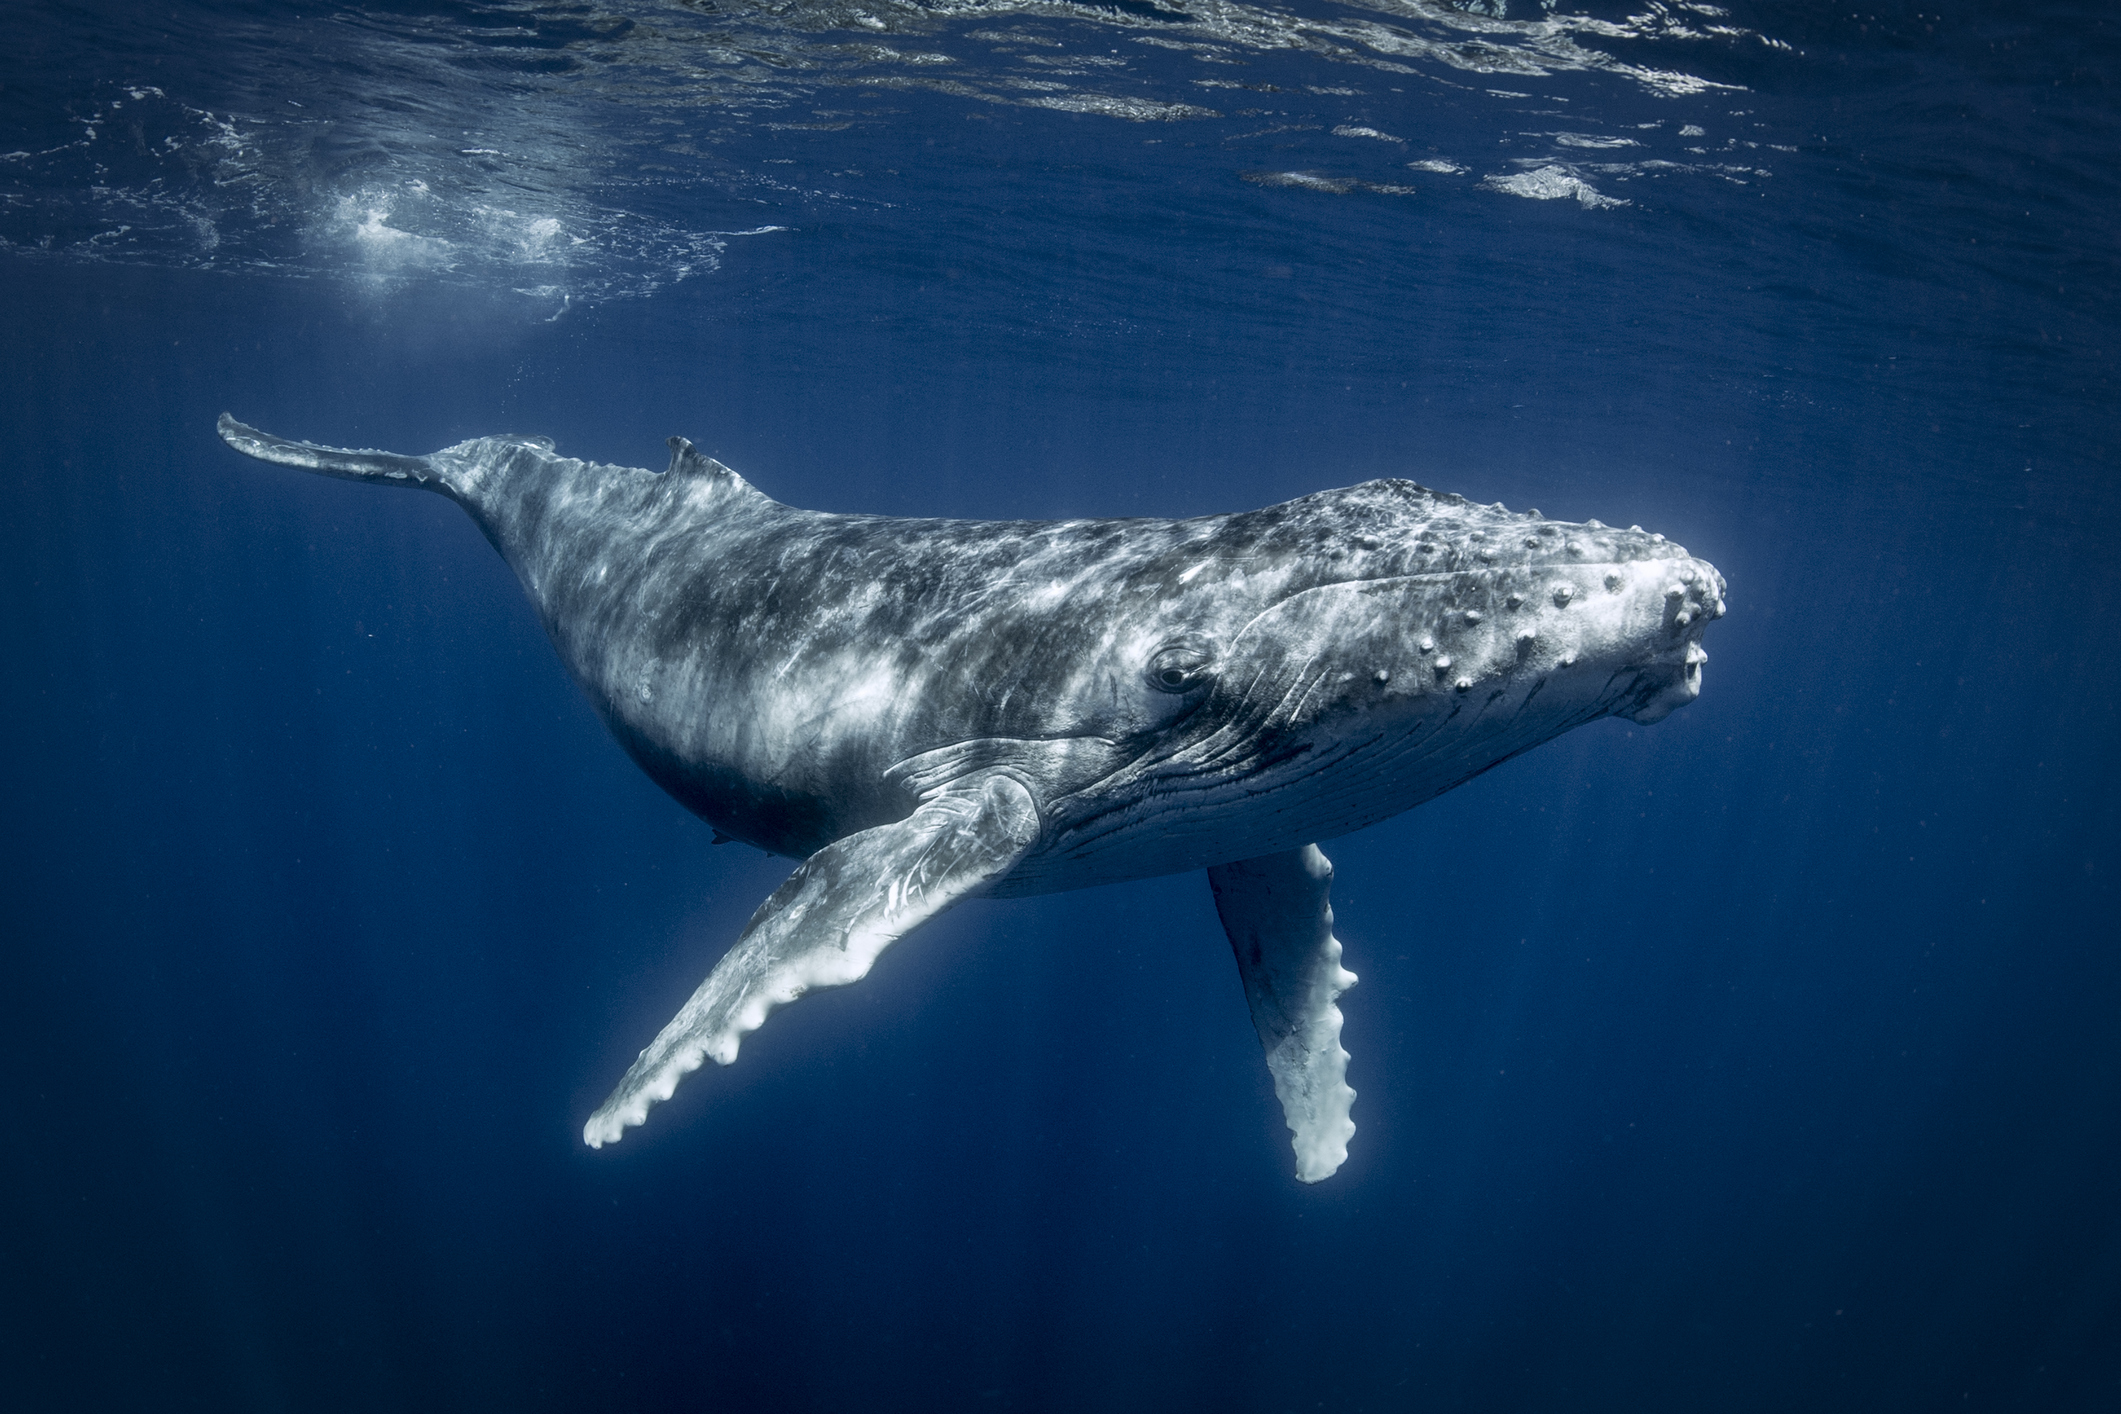 ripple musterisi yeni hizmetini tanitirken balinalar 230 milyon xrp tasidi